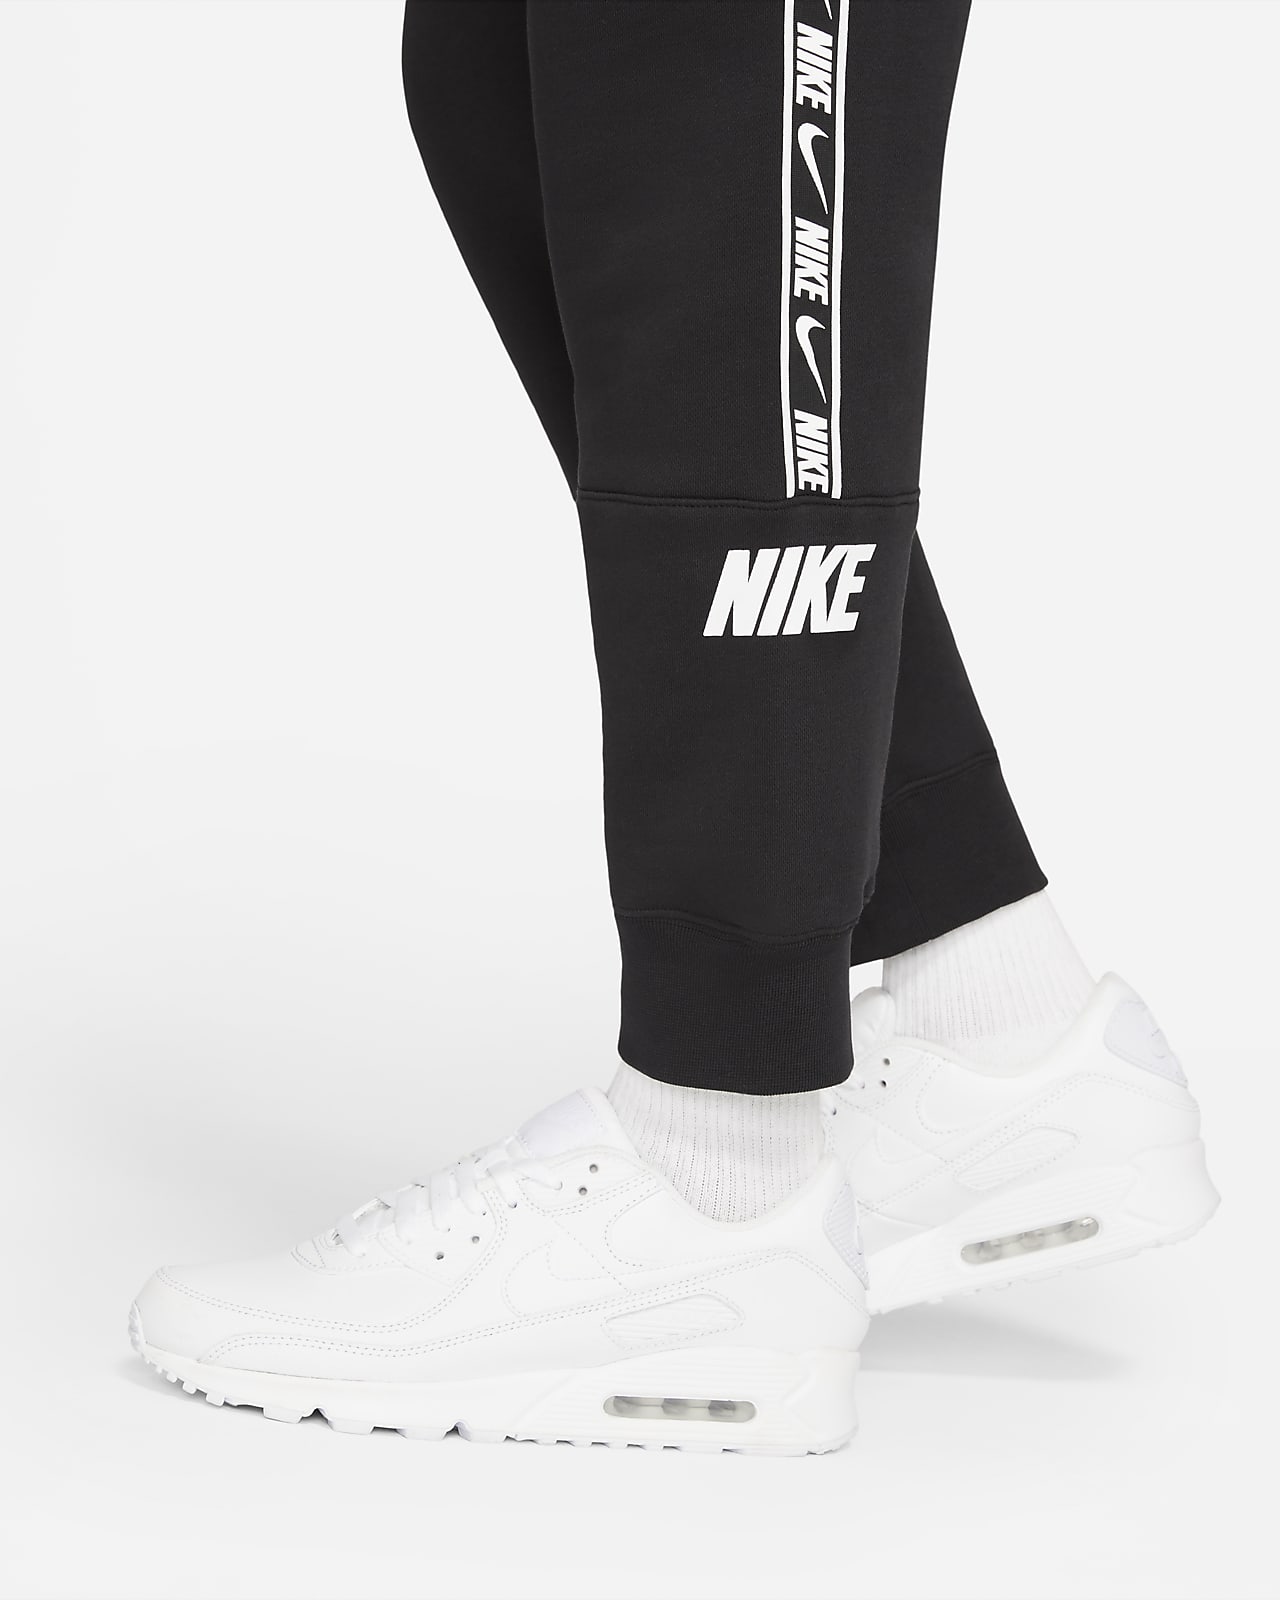 Nike Sportswear Men's Fleece Joggers 